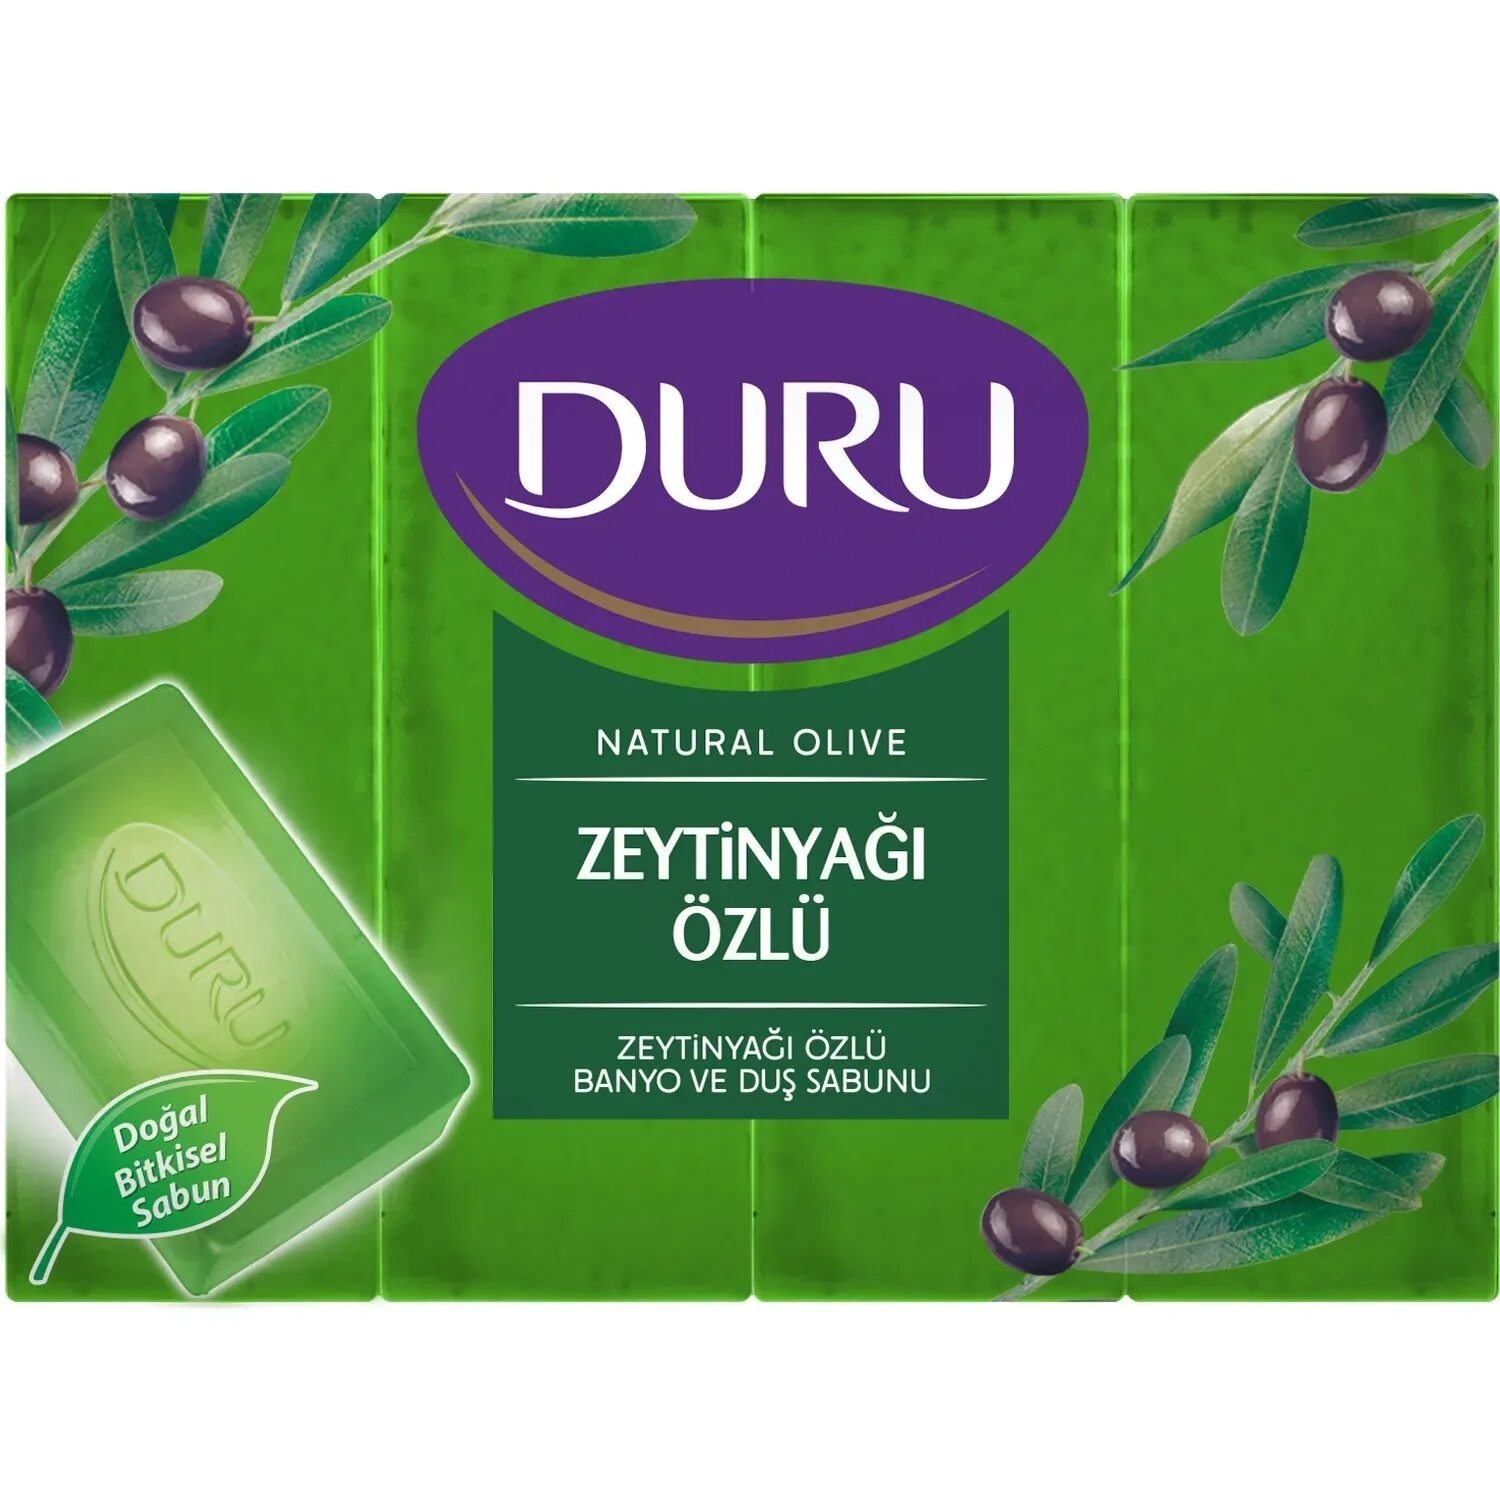 Olive natural. Мыло Duru. Duru natural Olive. Оливковое мыло. Турецкое мыло Duru.